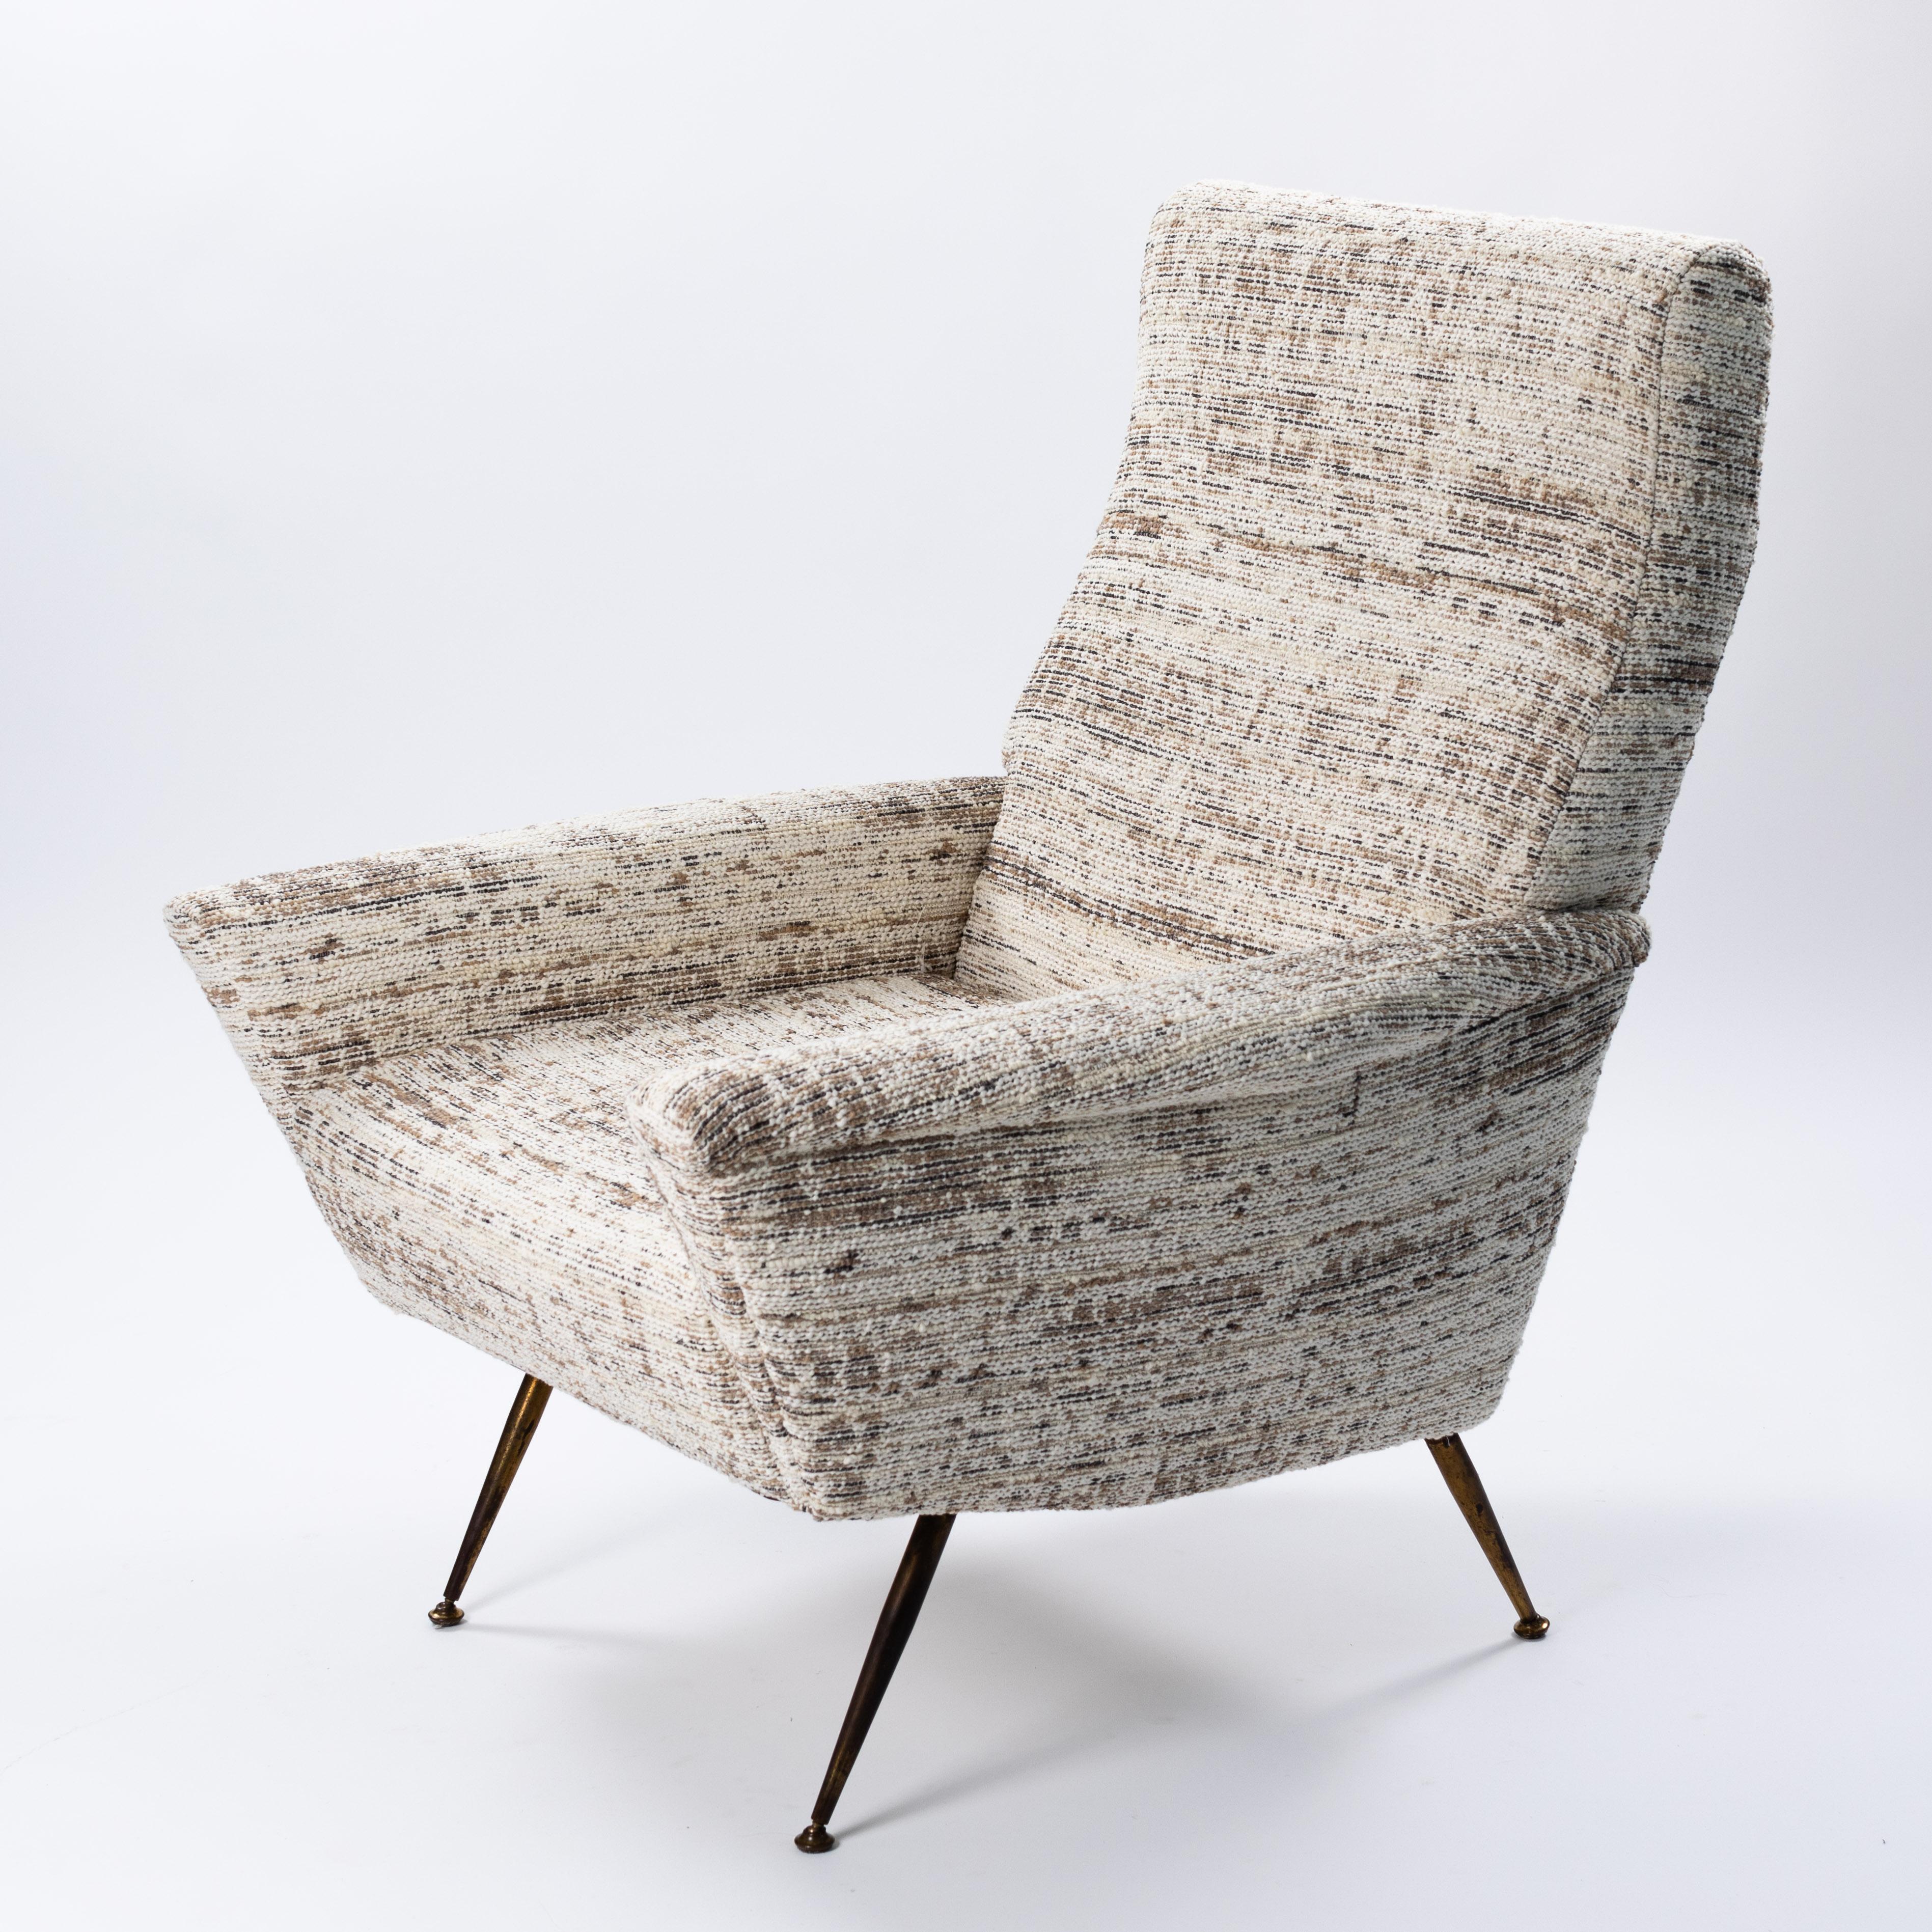 Geradliniger Design-Sessel aus dem Italien der 1950er Jahre.
Die Linienführung ist markant, das Objekt verjüngt sich an den Seiten, die Armlehnen verjüngen sich ebenfalls, die Rückenlehne neigt sich für den Sitzkomfort zurück und richtet sich dann